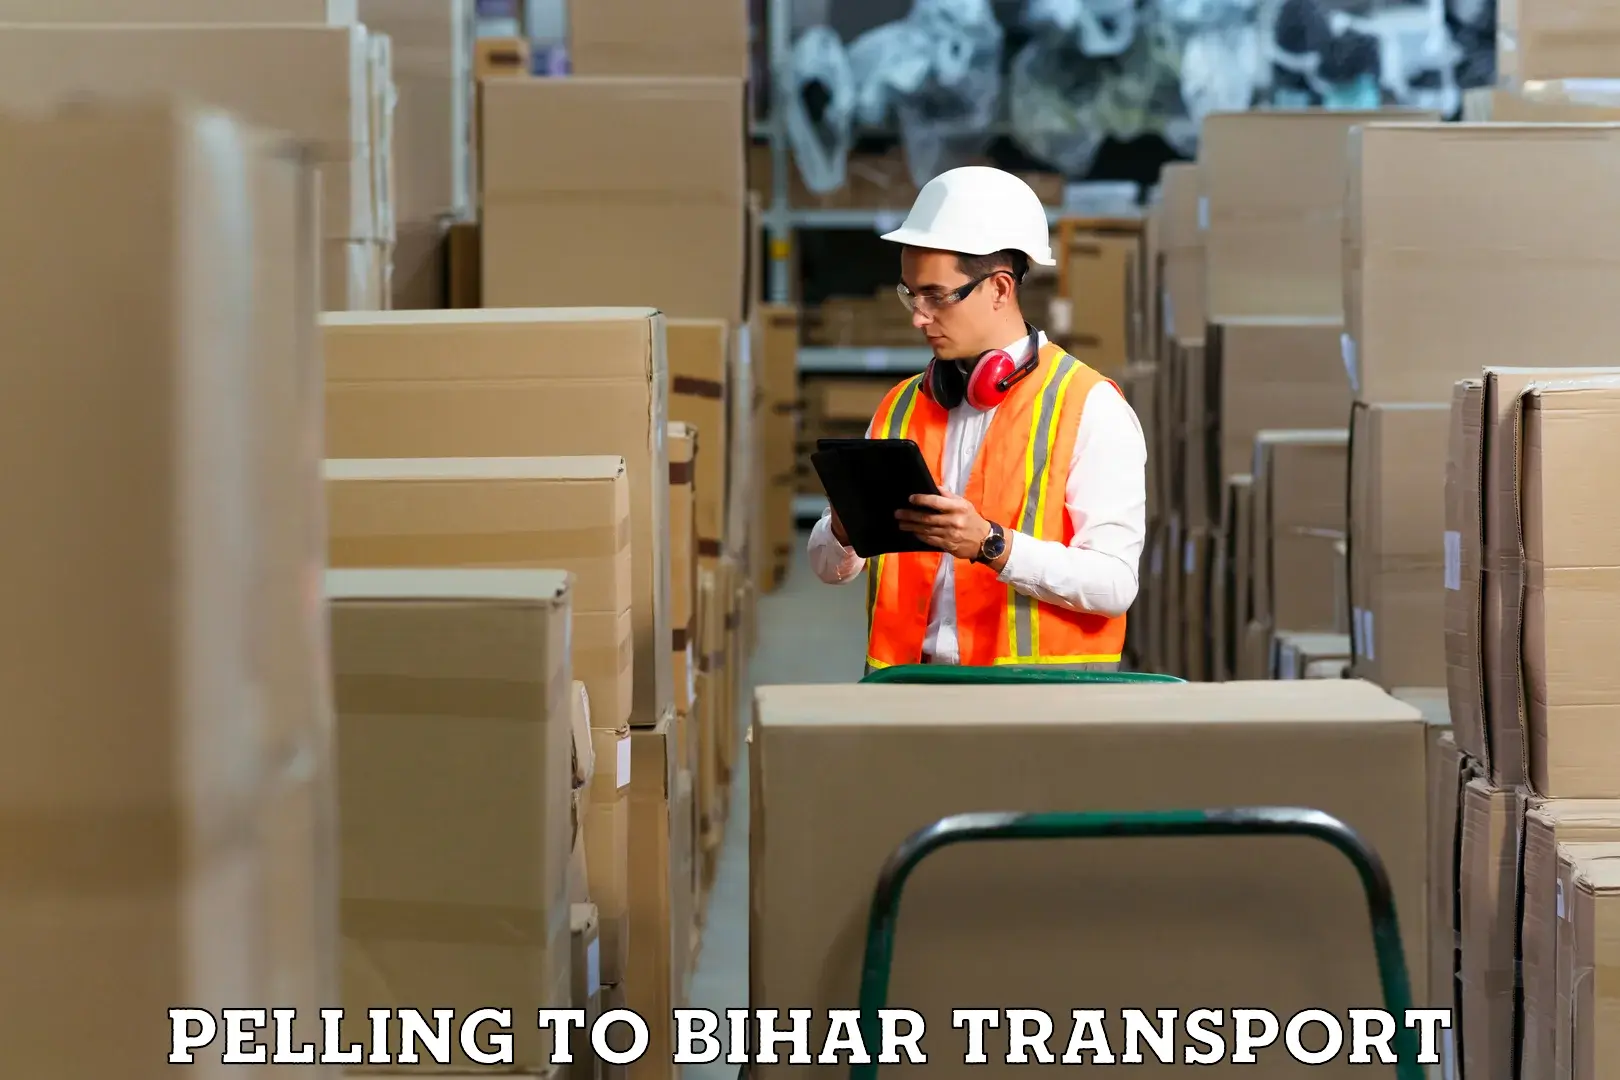 Furniture transport service Pelling to Bharwara